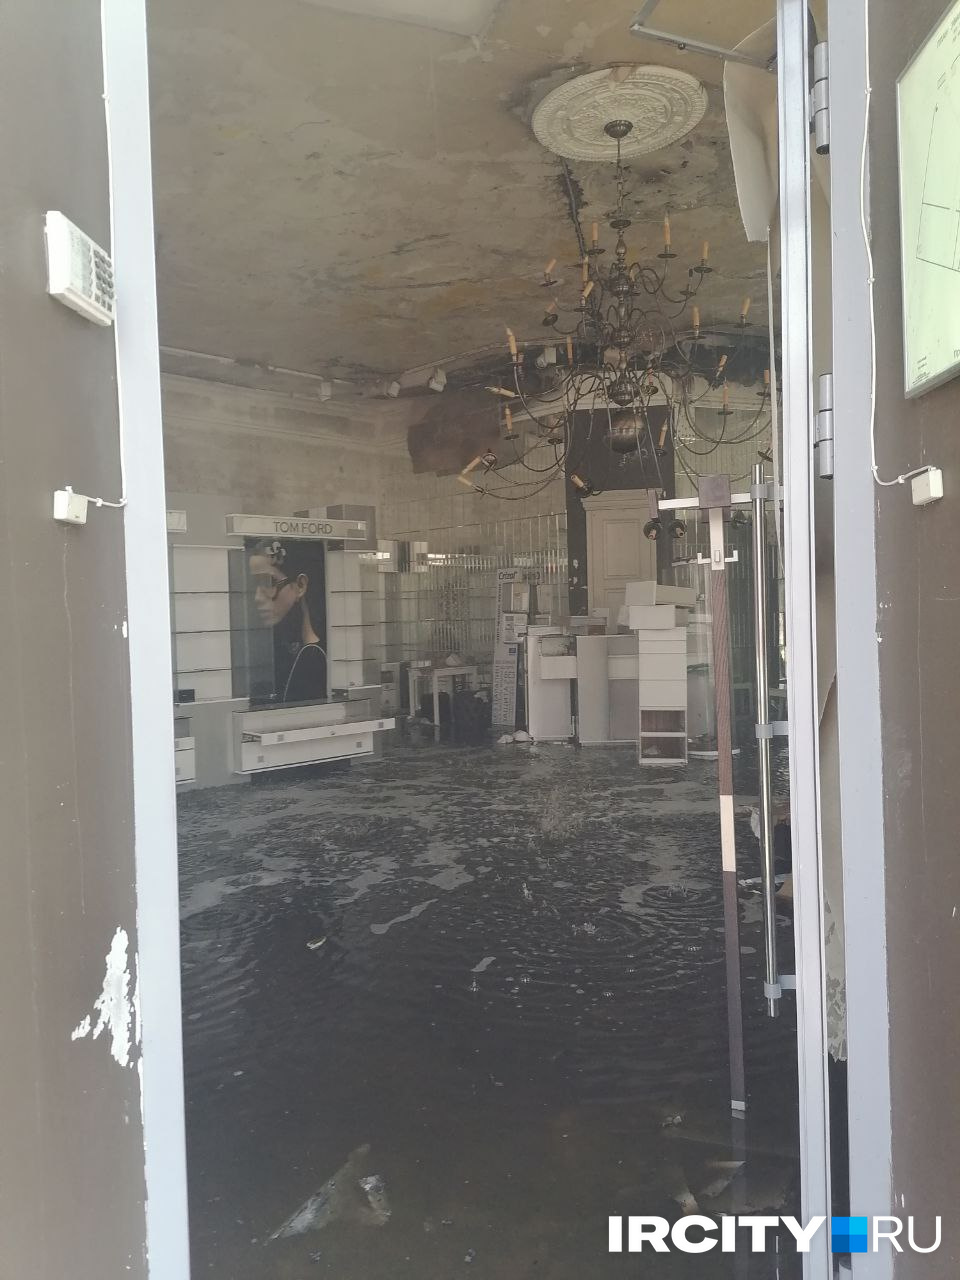 Магазин оптики на первом этаже, пострадавший от пожара. Его вход располагался с торца здания